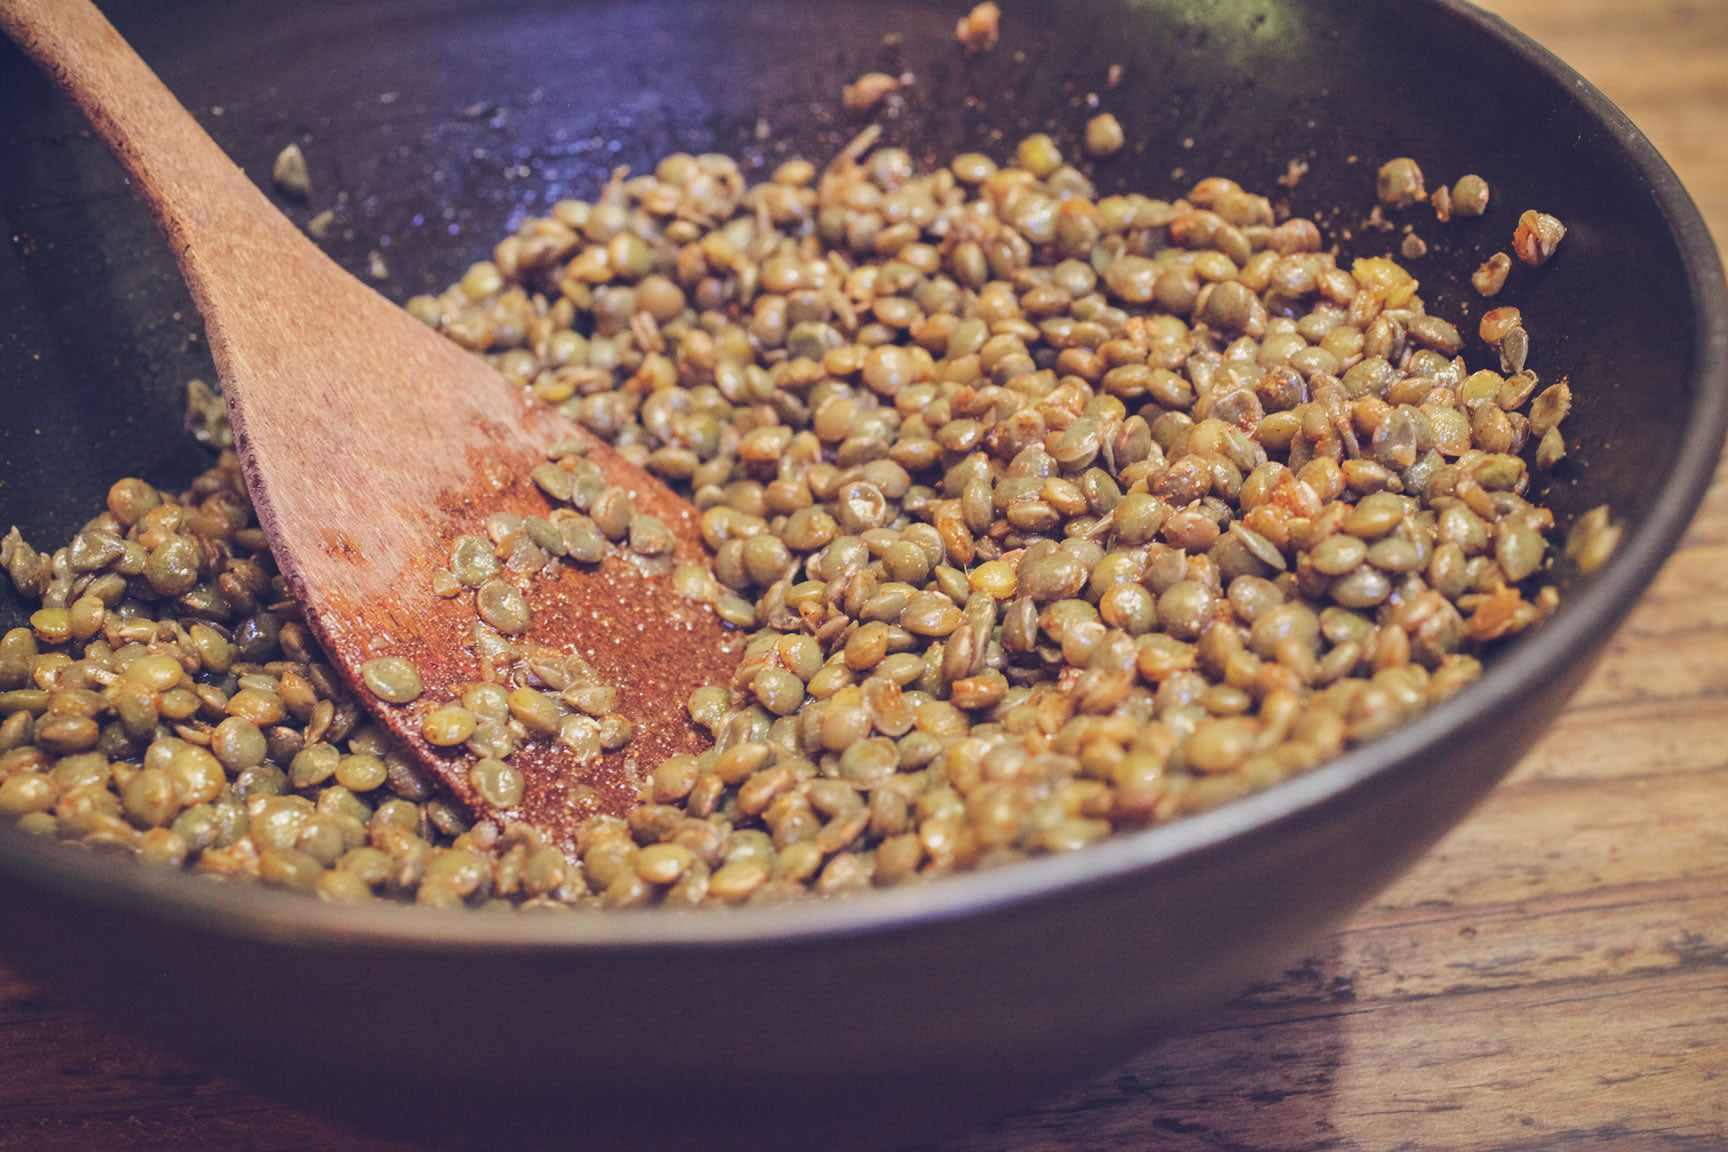 toss lentils in dressing